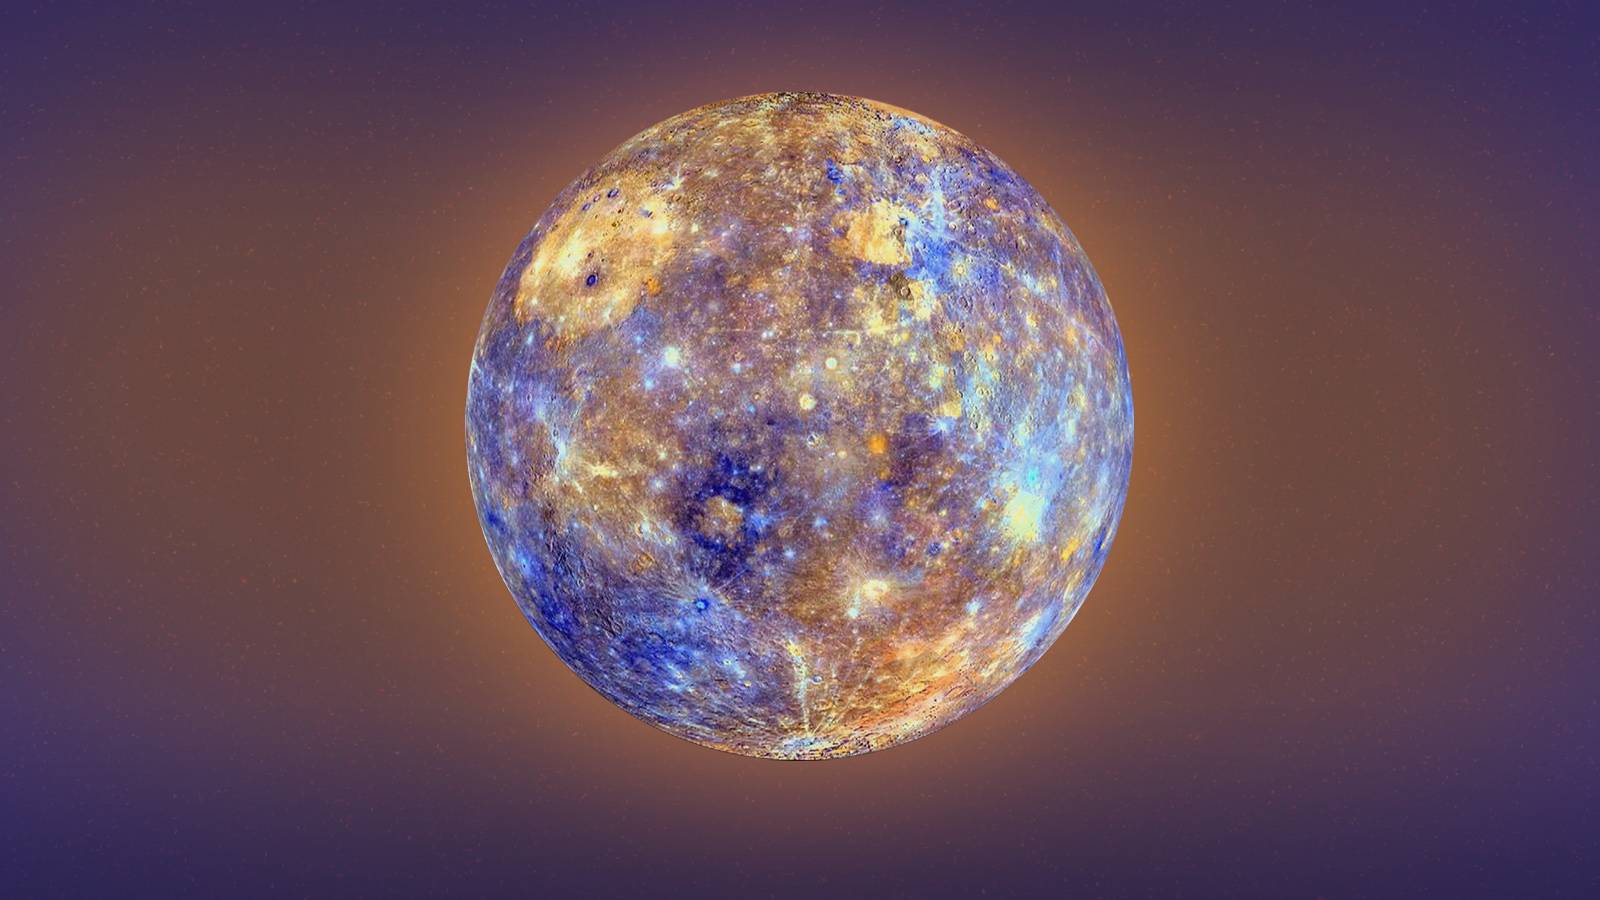 Planeet Mercurius klinkt